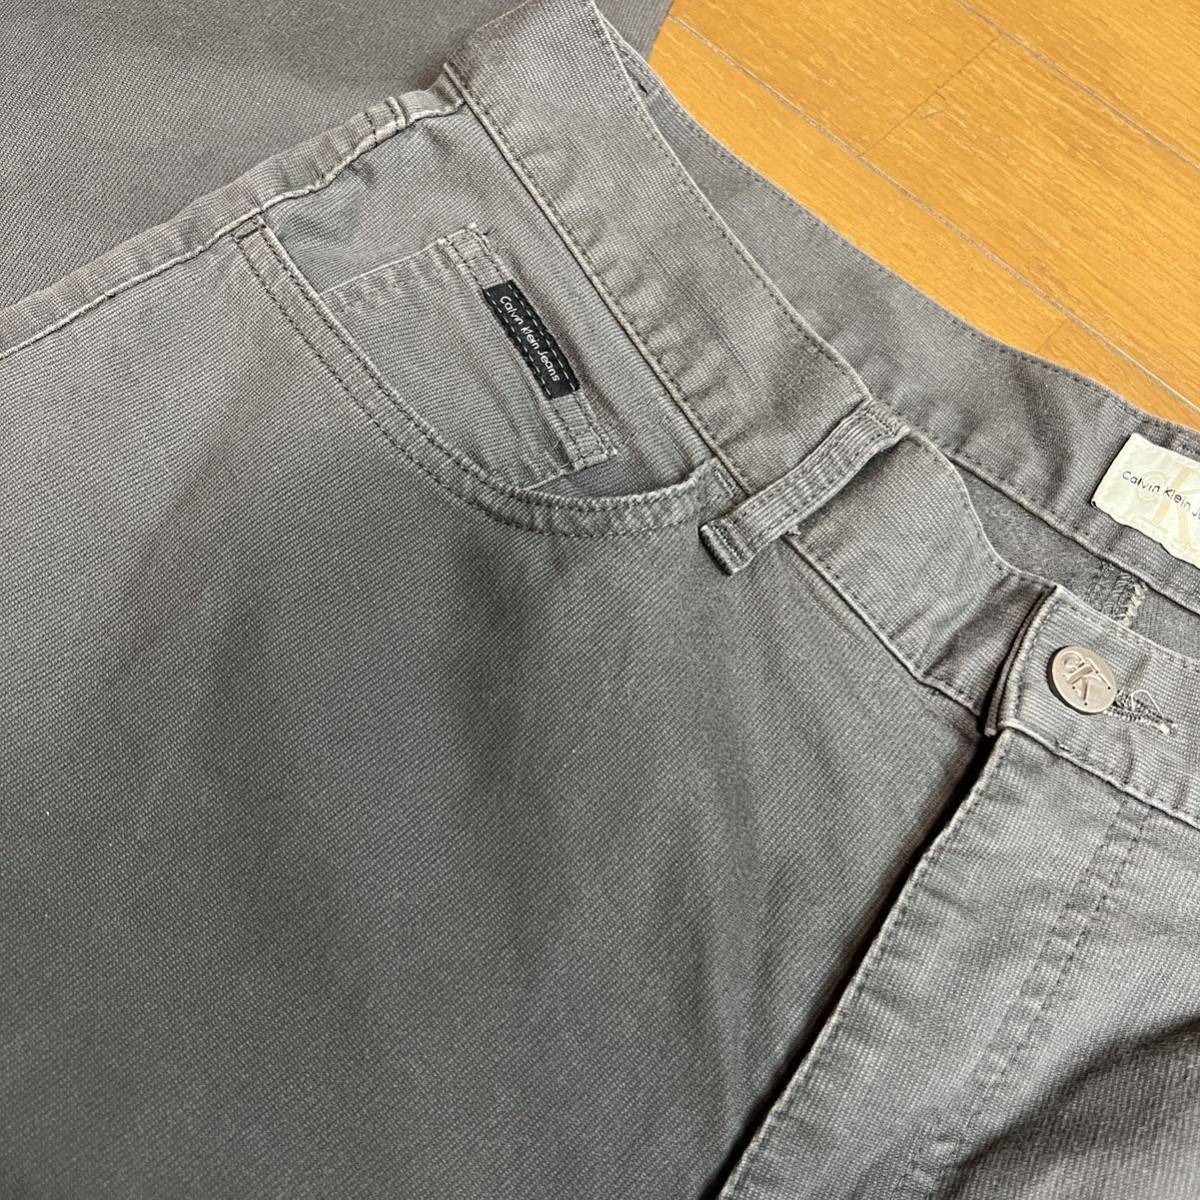 Calvin Klein Jeans カルバンクライン ジーンズ サイズ34 チノパン GRY グレー_画像5